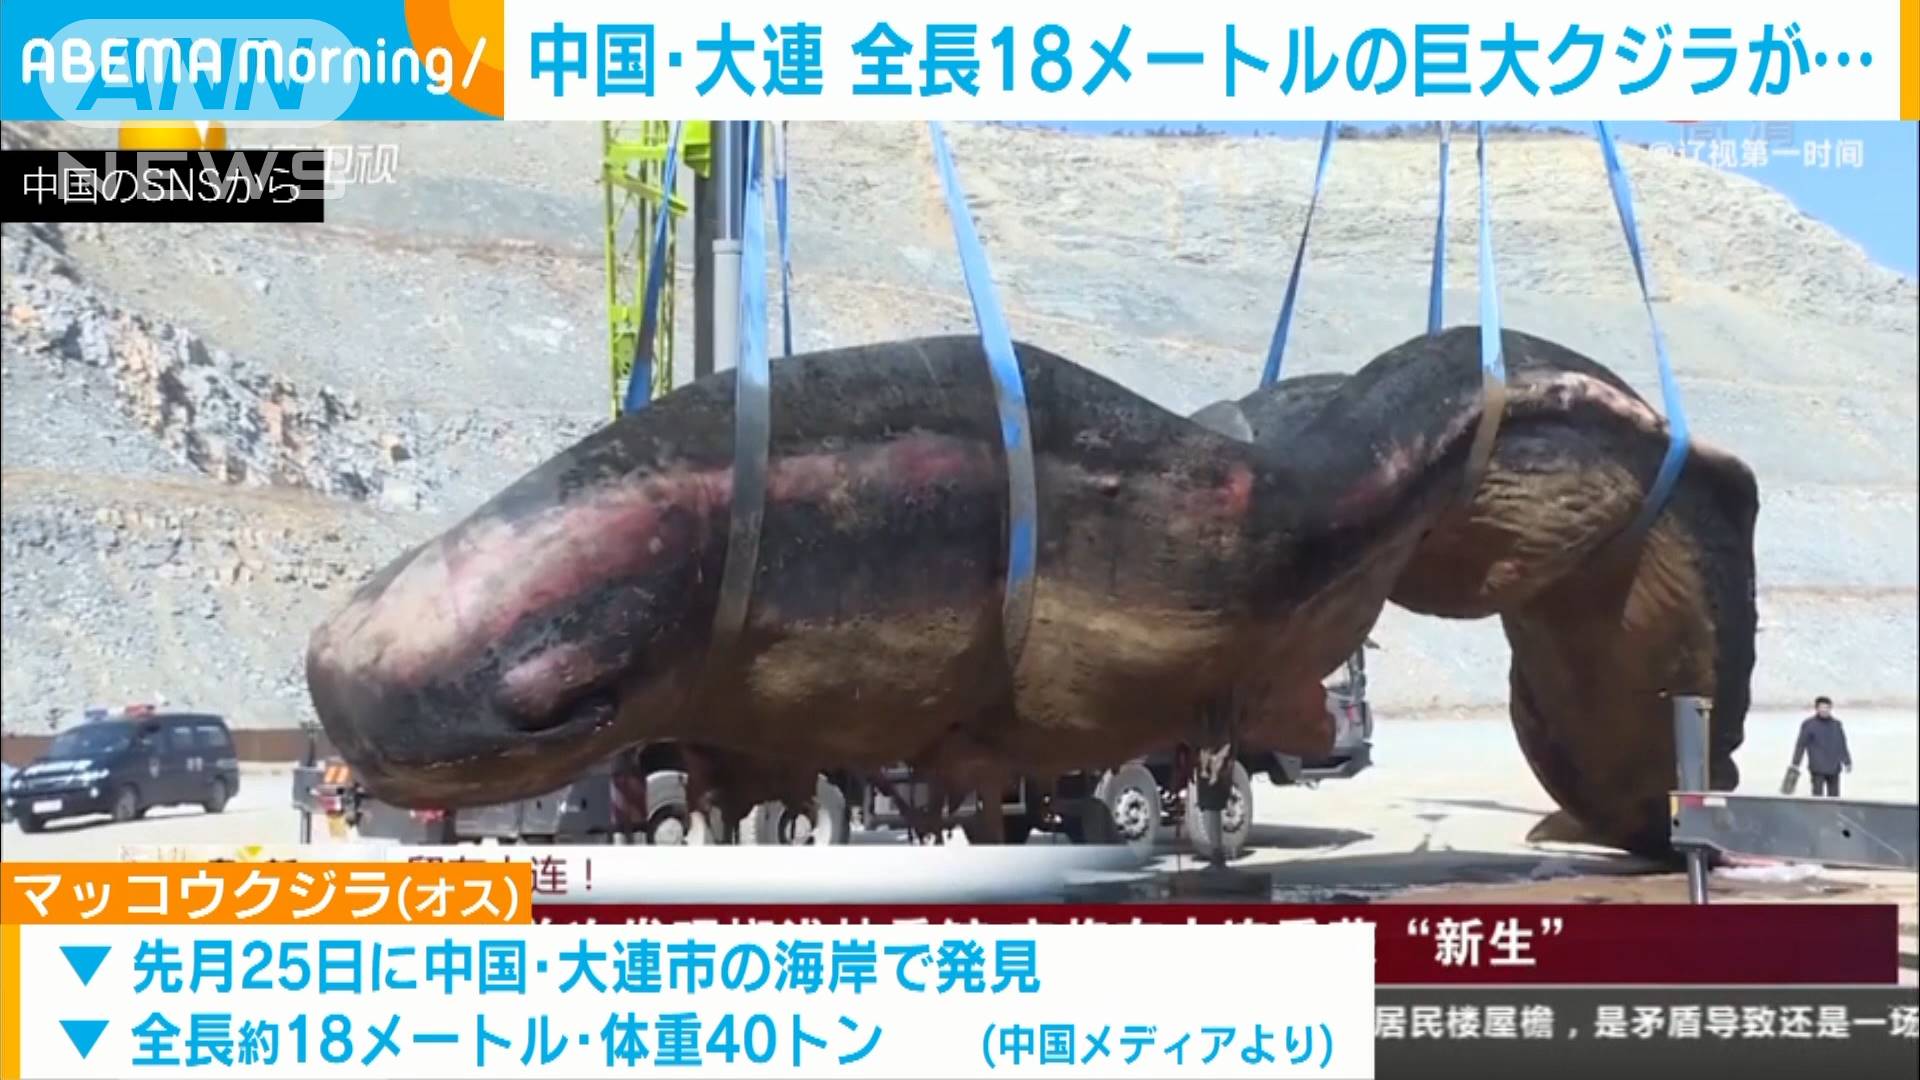 海岸に18mの巨大クジラ打ち上げられる 中国 大連 テレ朝news テレビ朝日のニュースサイト